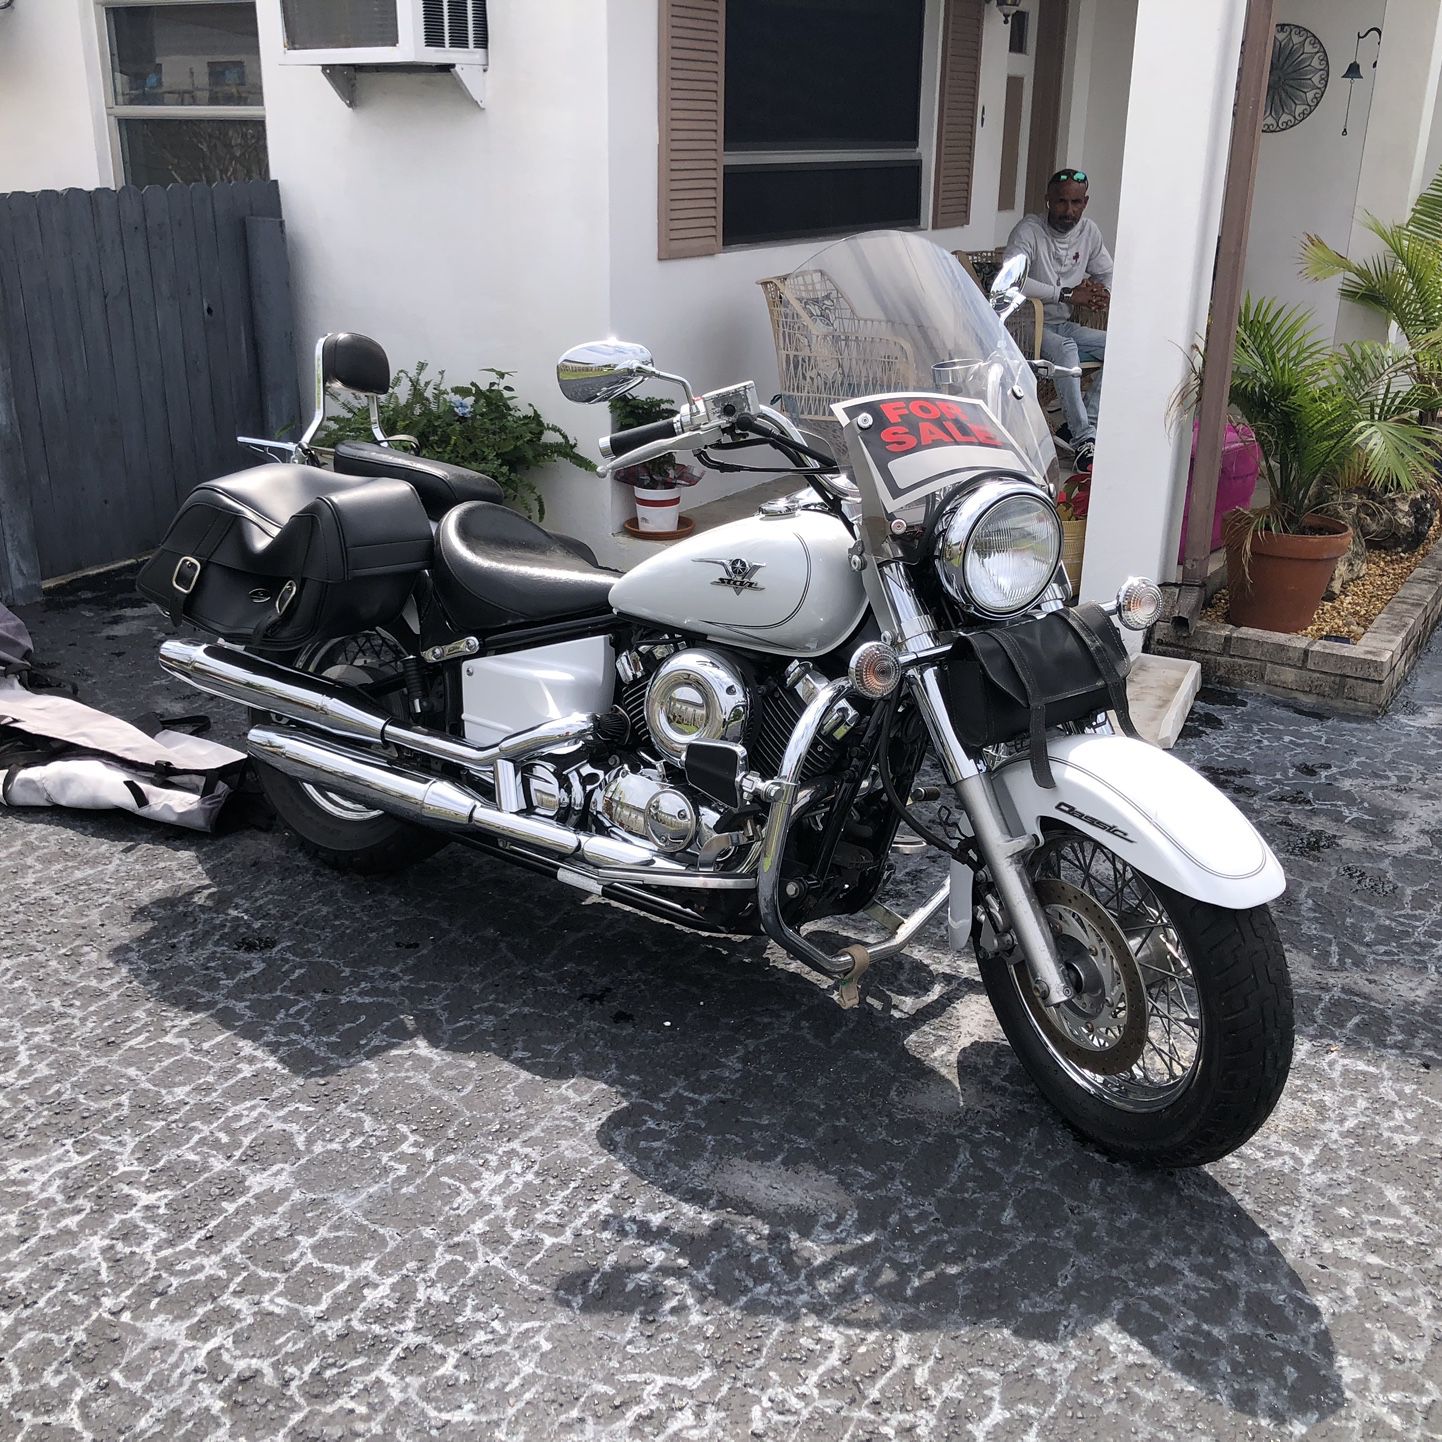 Yamaha Motorcycle V Star 1100